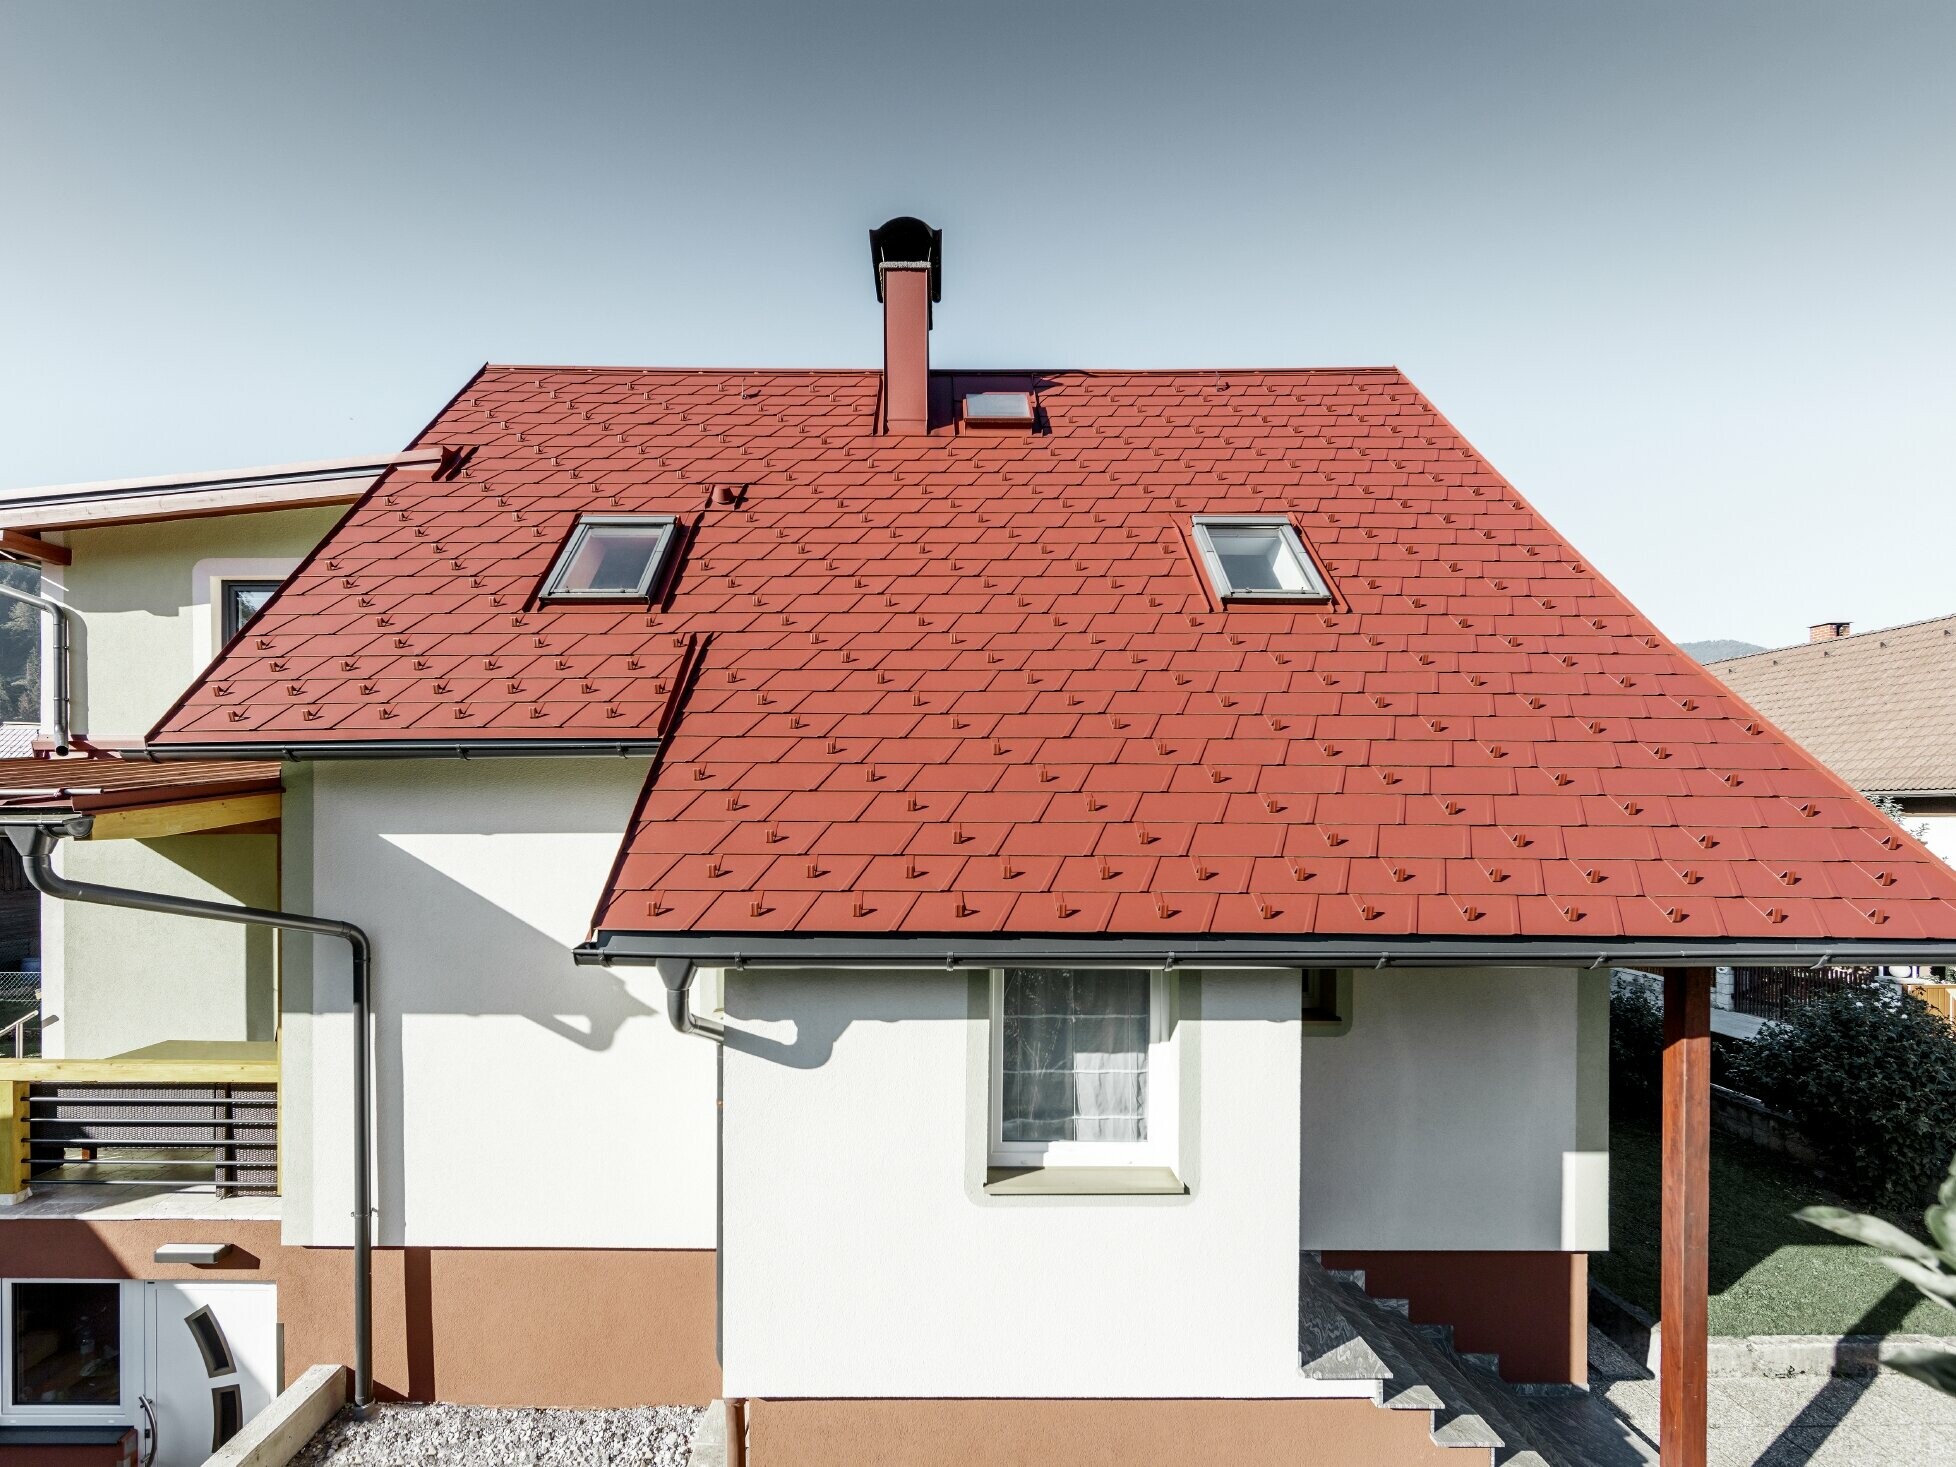 Saniertes Einfamilienhaus mit neuem PREFA Dachschindel-Dach, verlegt wurde die DS.19 in der Farbe oxydrot.